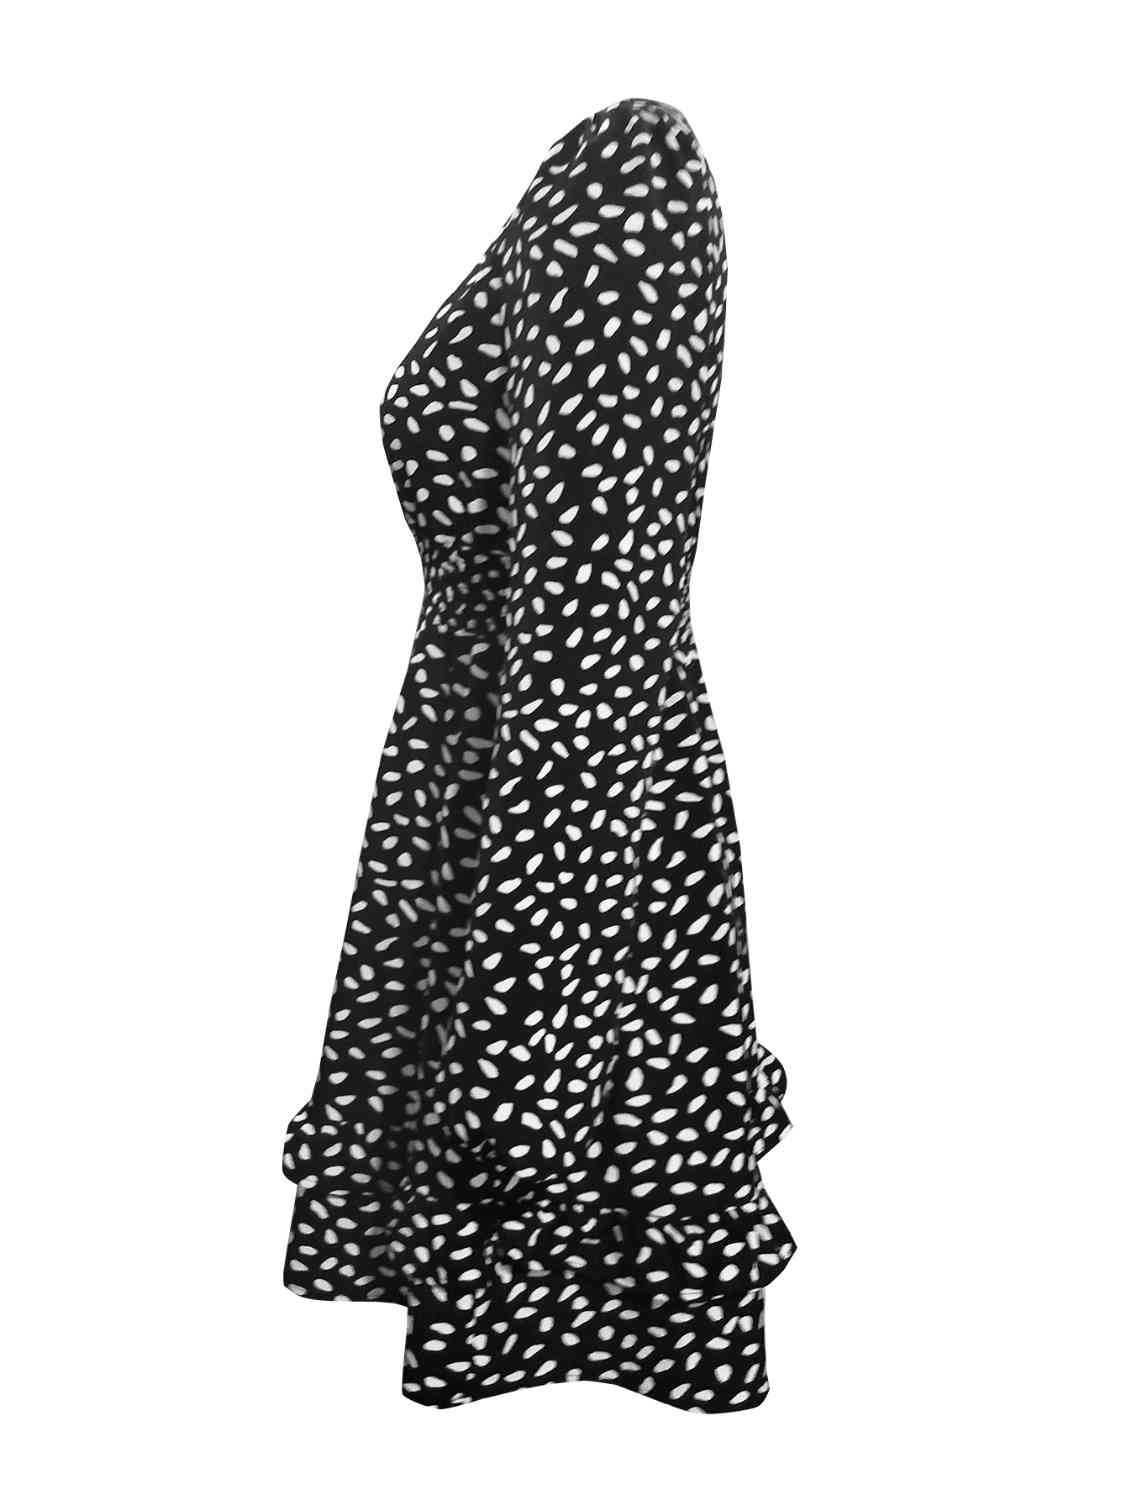 Printed Ruffle Trim Smocked Mini Dress | Fashionsarah.com